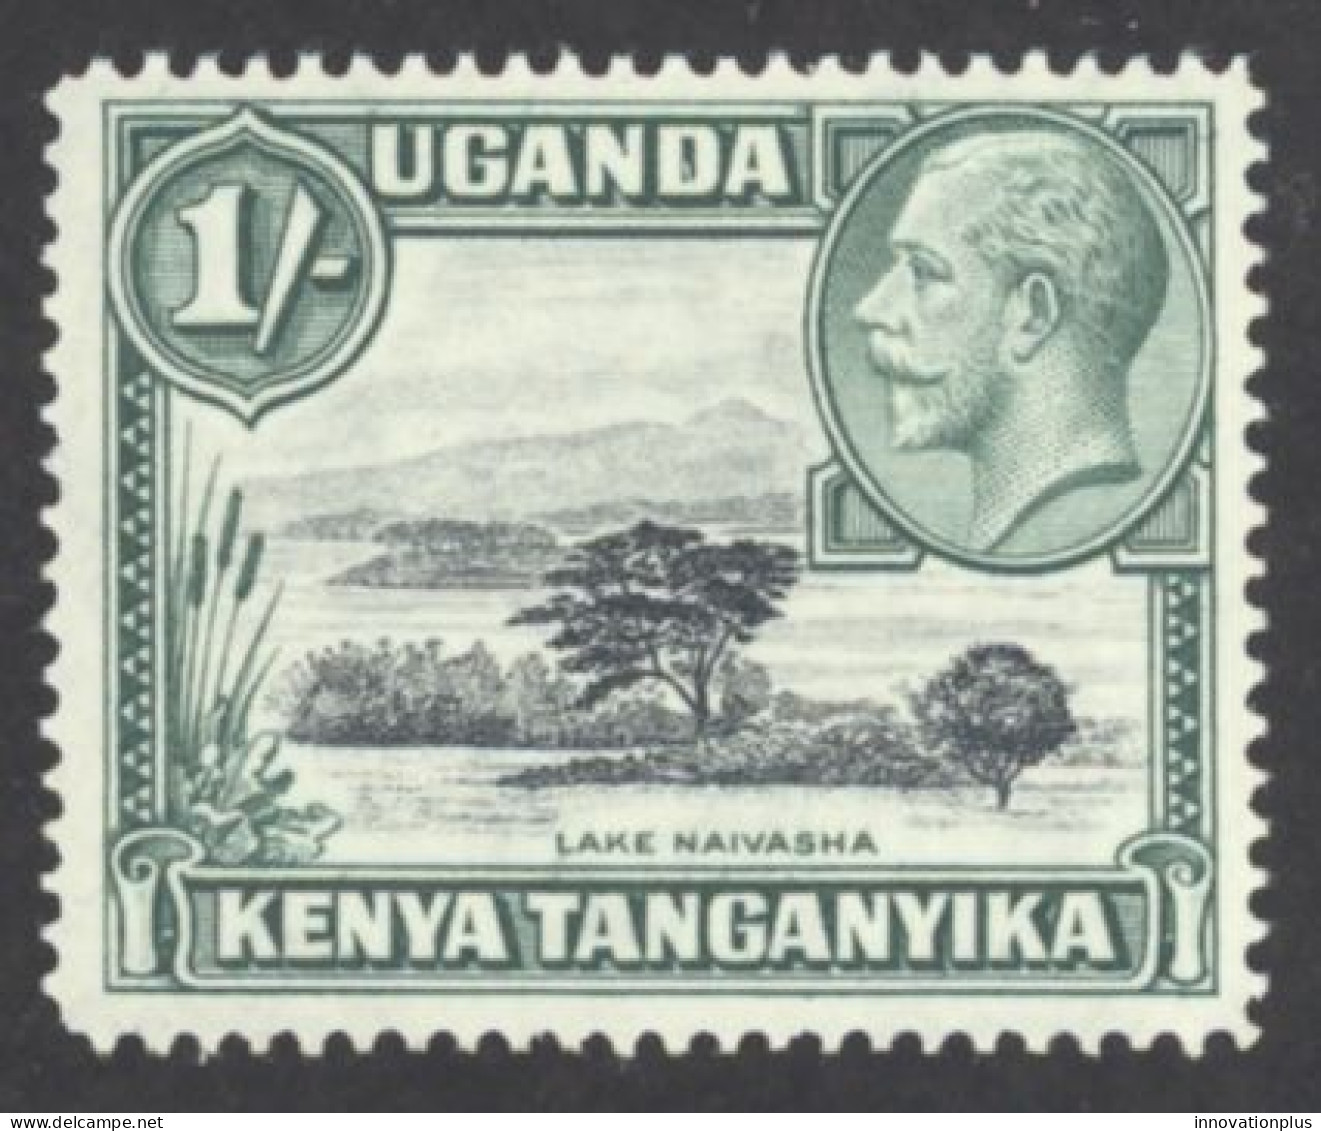 Kenya, Uganda, Tanzania Sc# 54 MH 1935 1sh Definitives - Kenya, Uganda & Tanzania